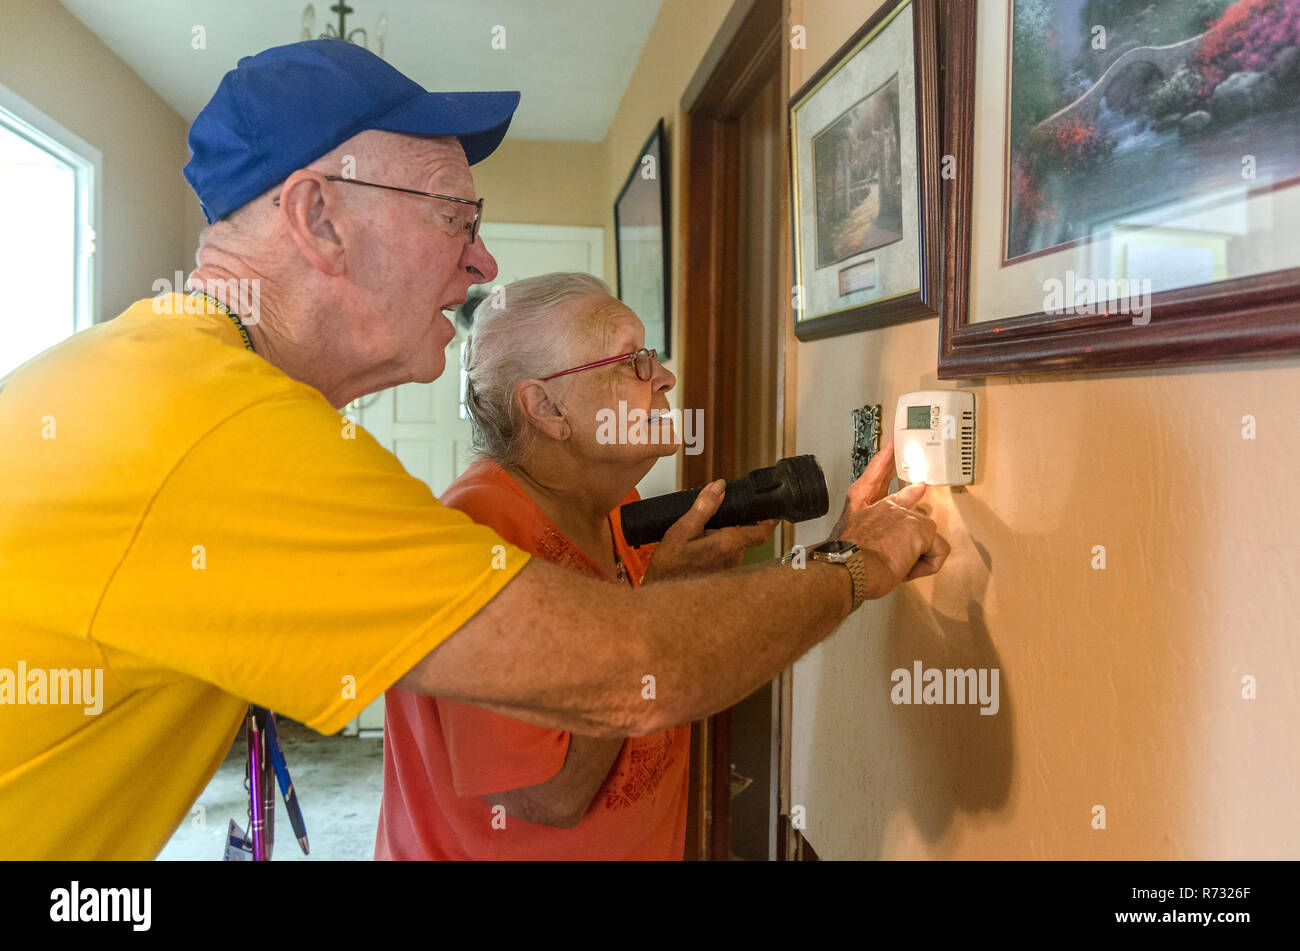 A Southern Baptist Katastrophenhilfe Freiwillige hilft eine Flut Opfer der Thermostat in ihr Haus nach einer Flut in Baton Rouge, Louisiana. Stockfoto